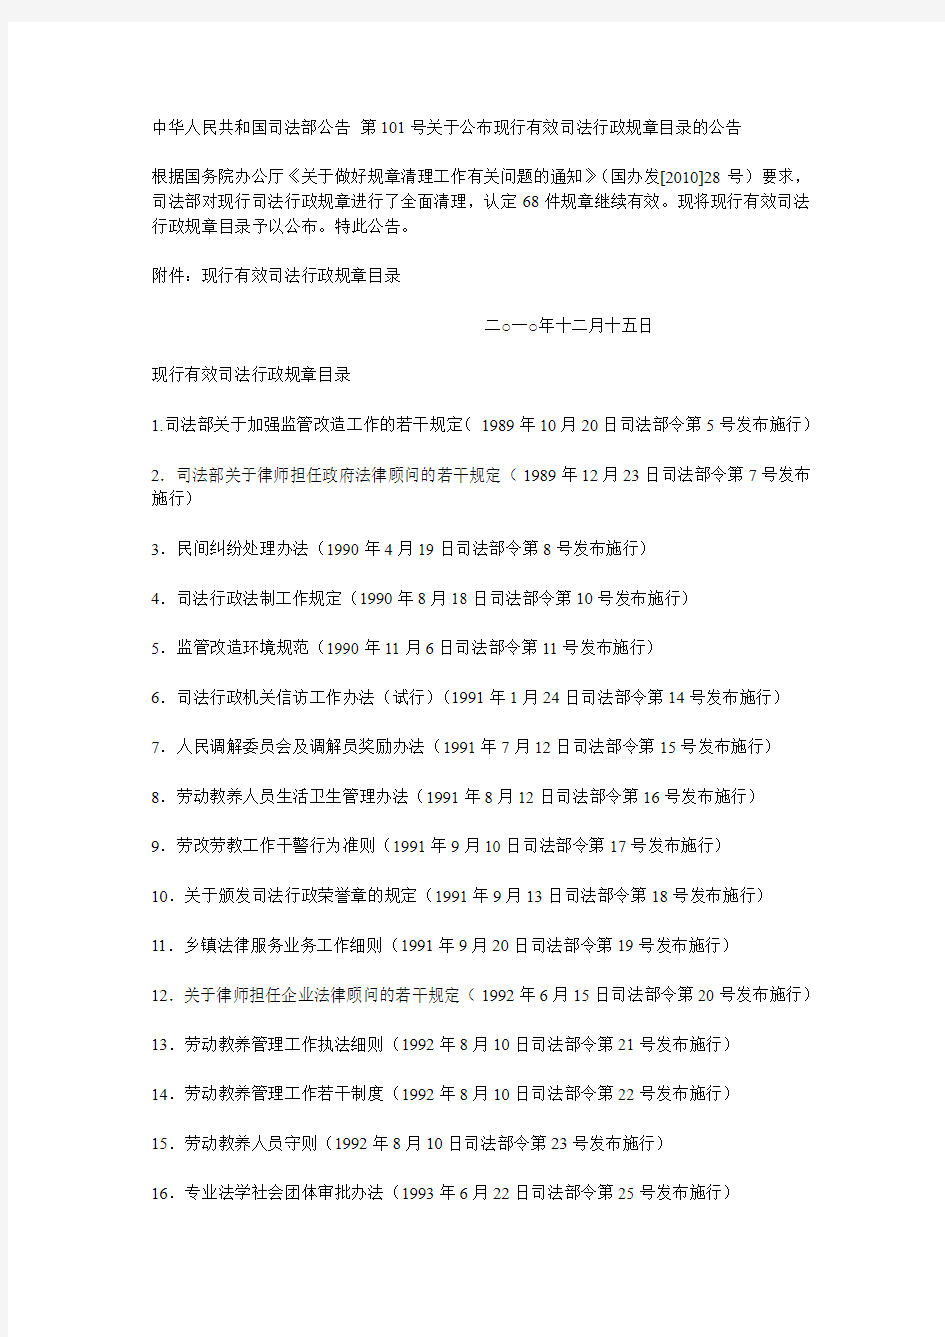 中华人民共和国司法部公告 第101号关于公布现行有效司法行政规章目录的公告